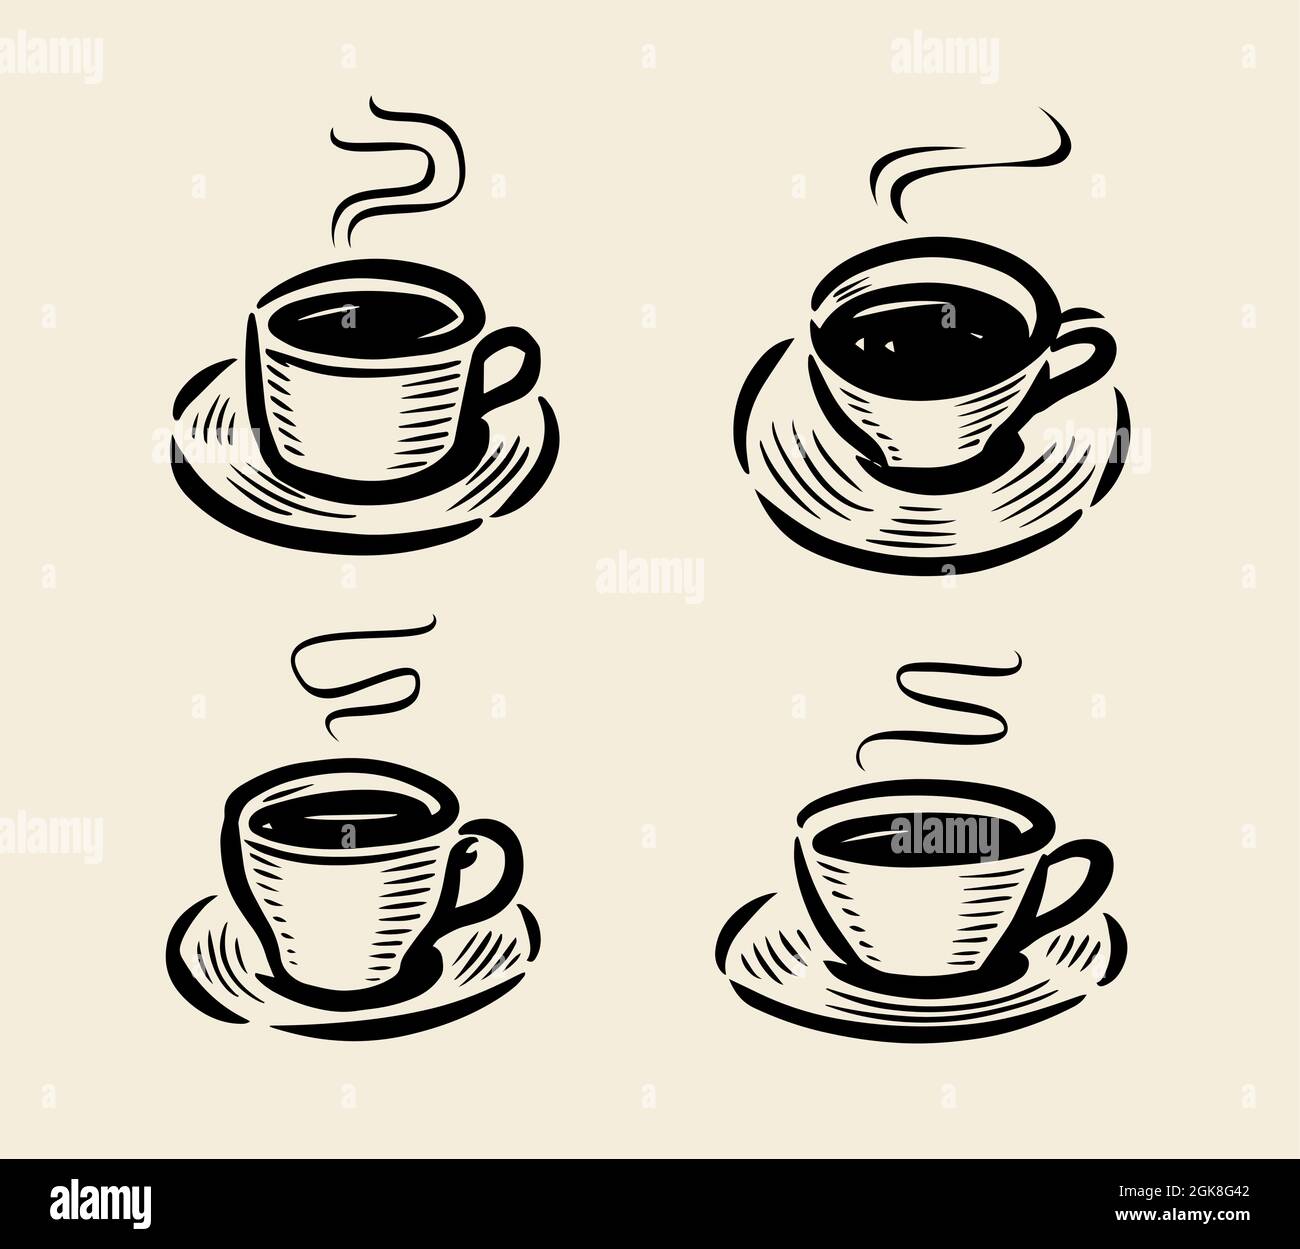 Set mit abstraktem Logo für Kaffeetassen. Handgezeichnete Skizze von Becher mit Dampf. Vektorgrafik Stock Vektor